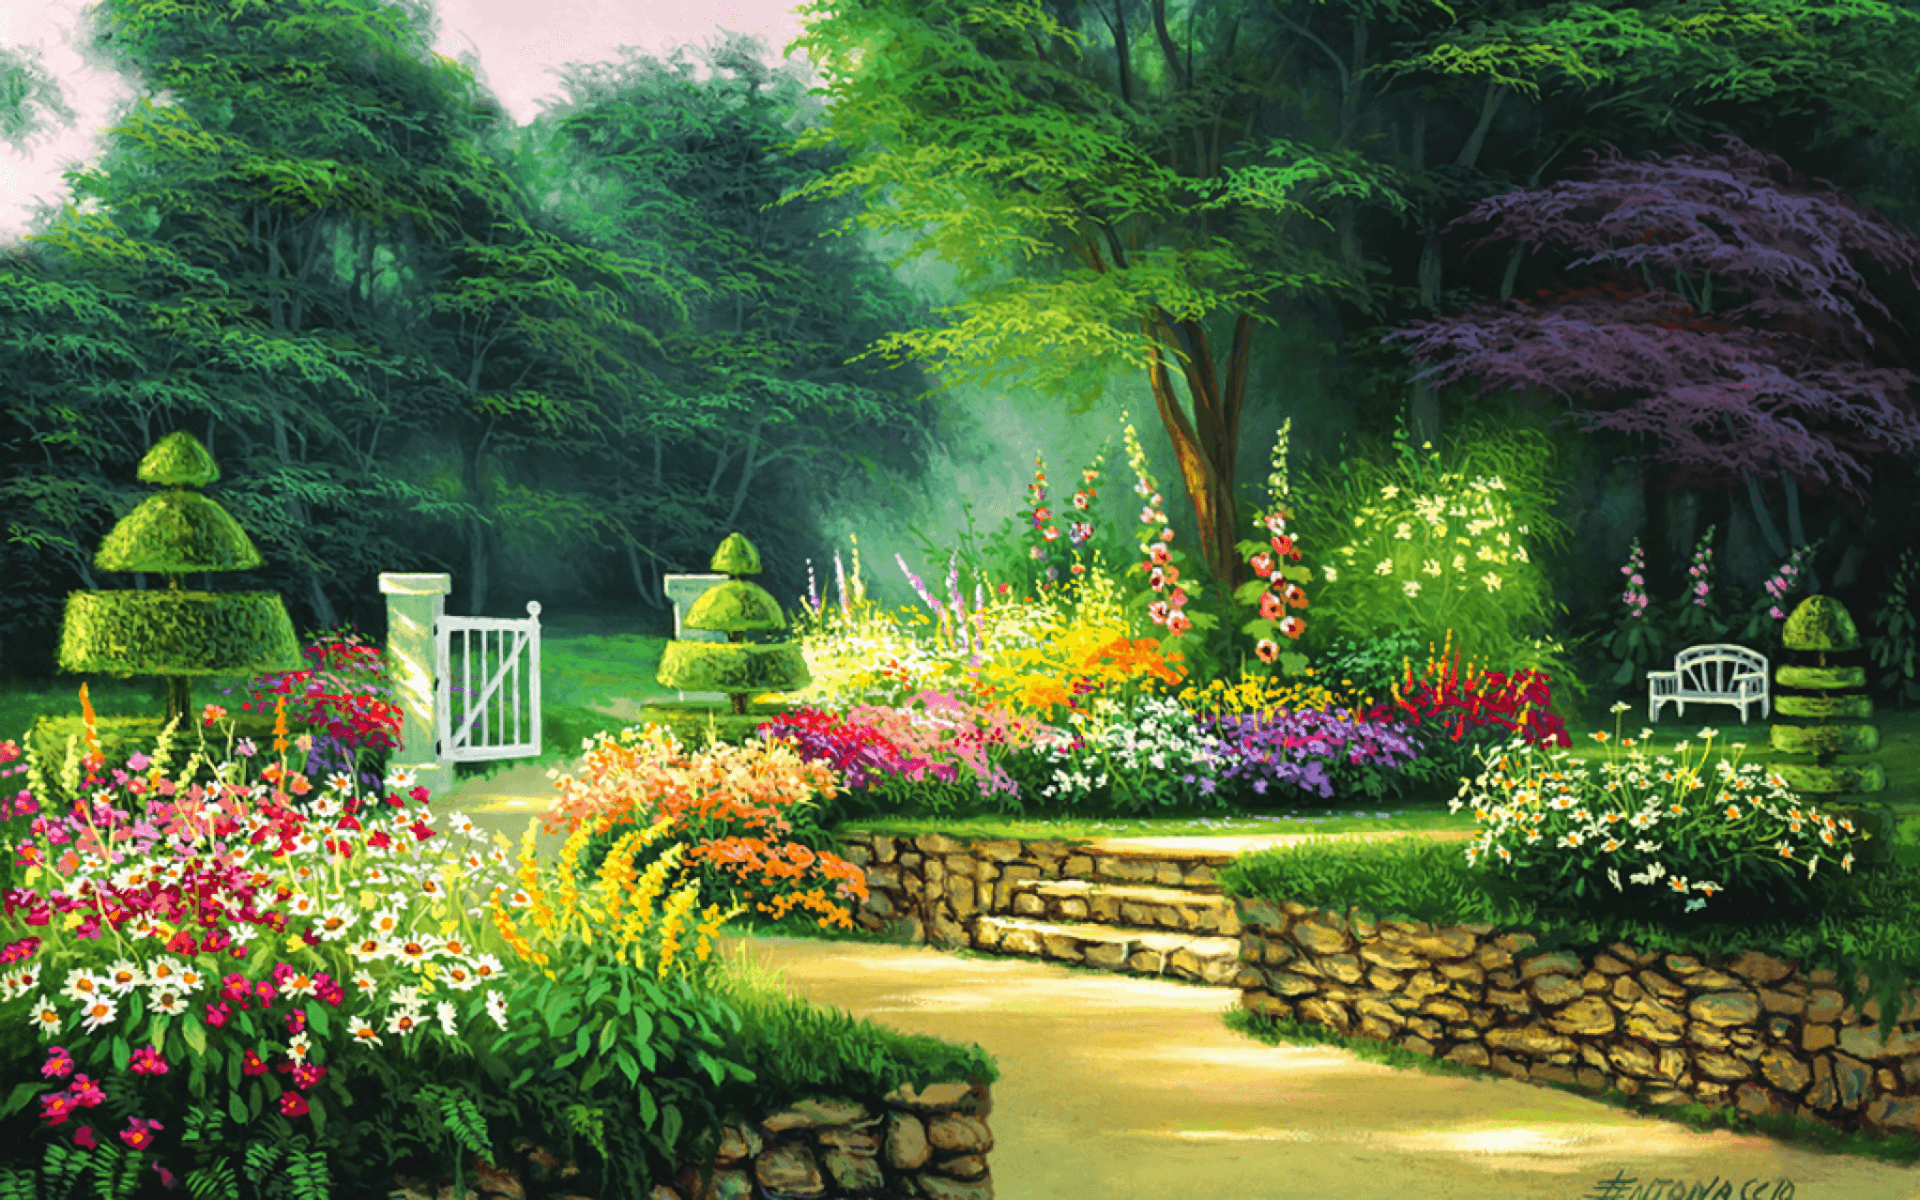 Tranh vẽ rừng hoa đẹp nhất nhất